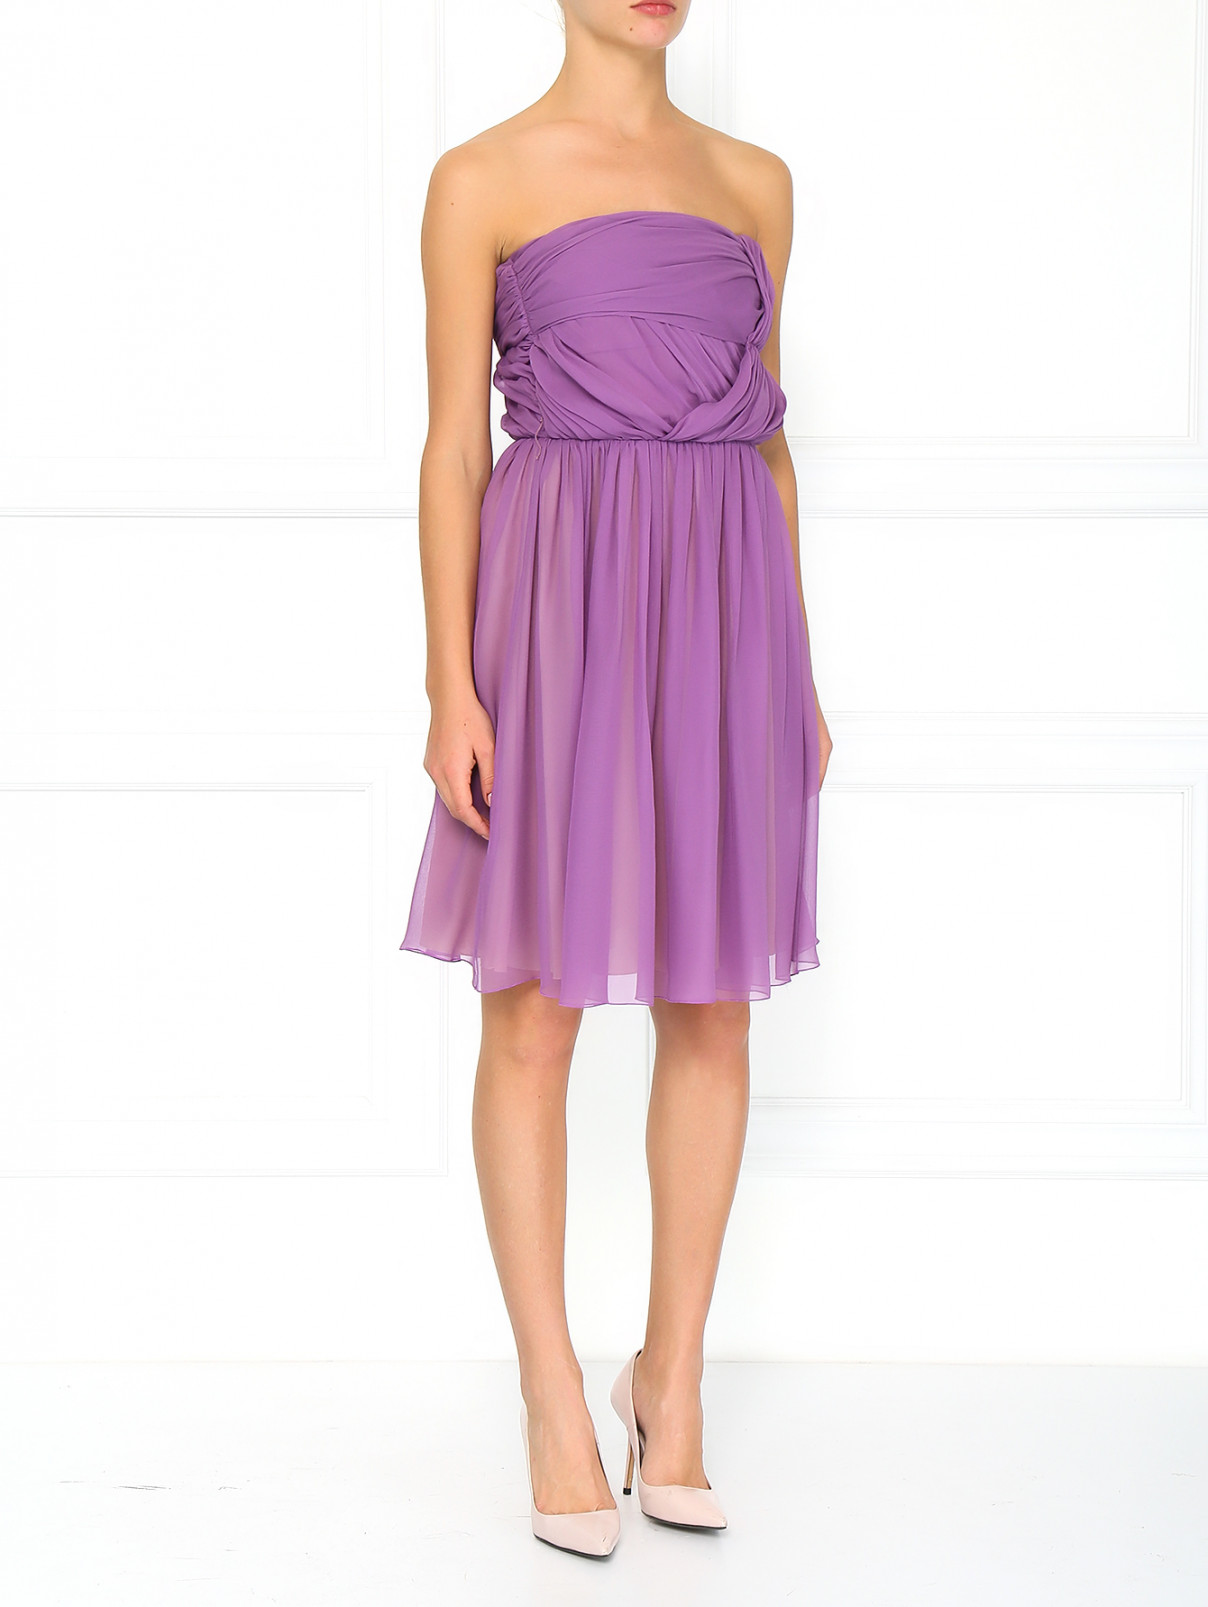 Шелковое платье с корсетом Iceberg  –  Модель Общий вид  – Цвет:  Фиолетовый